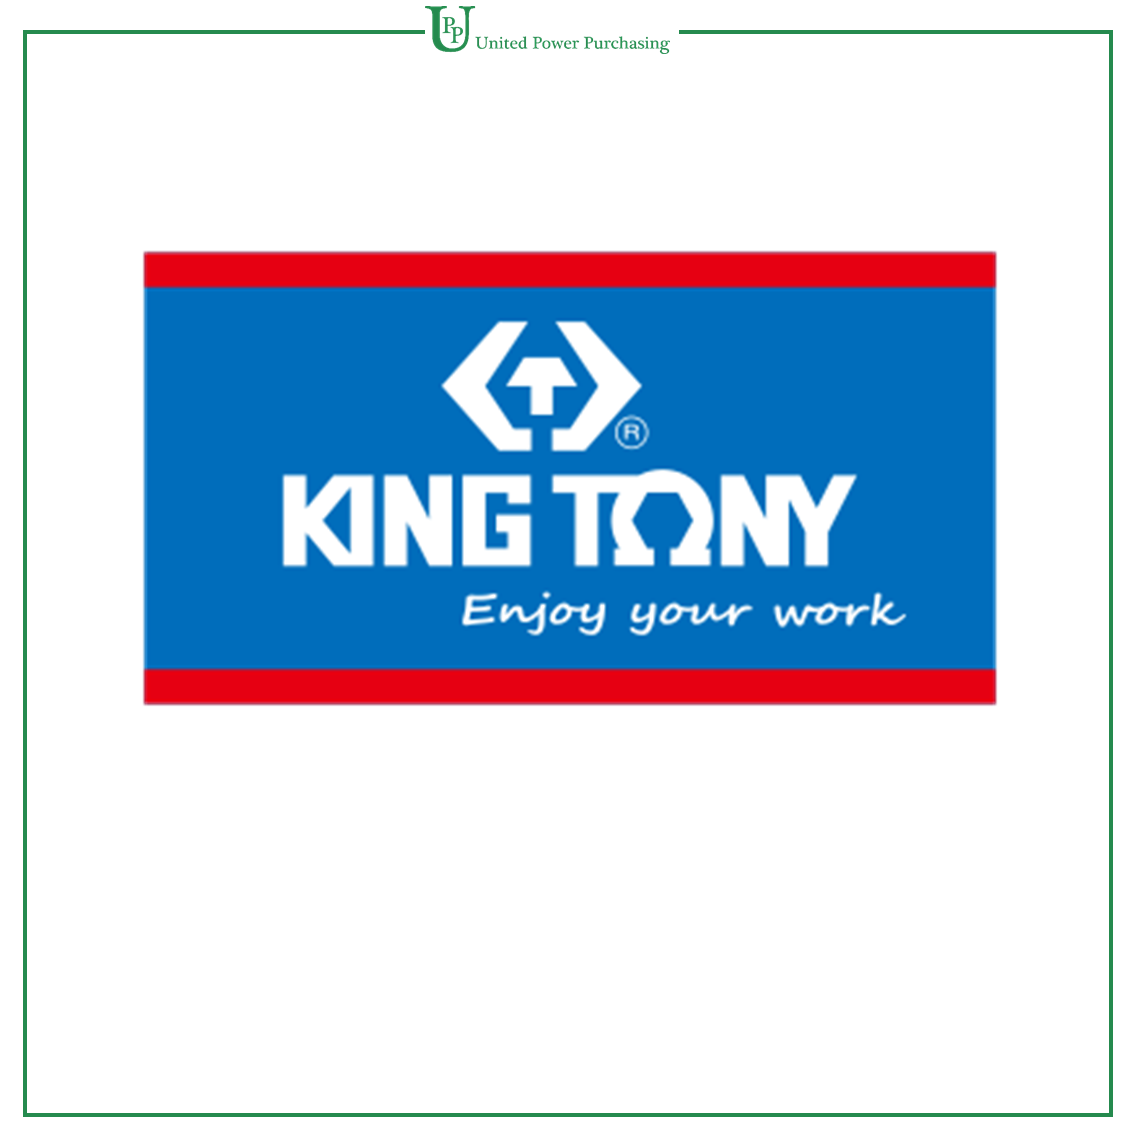 UPP - King Tony Catalogue Catalogue